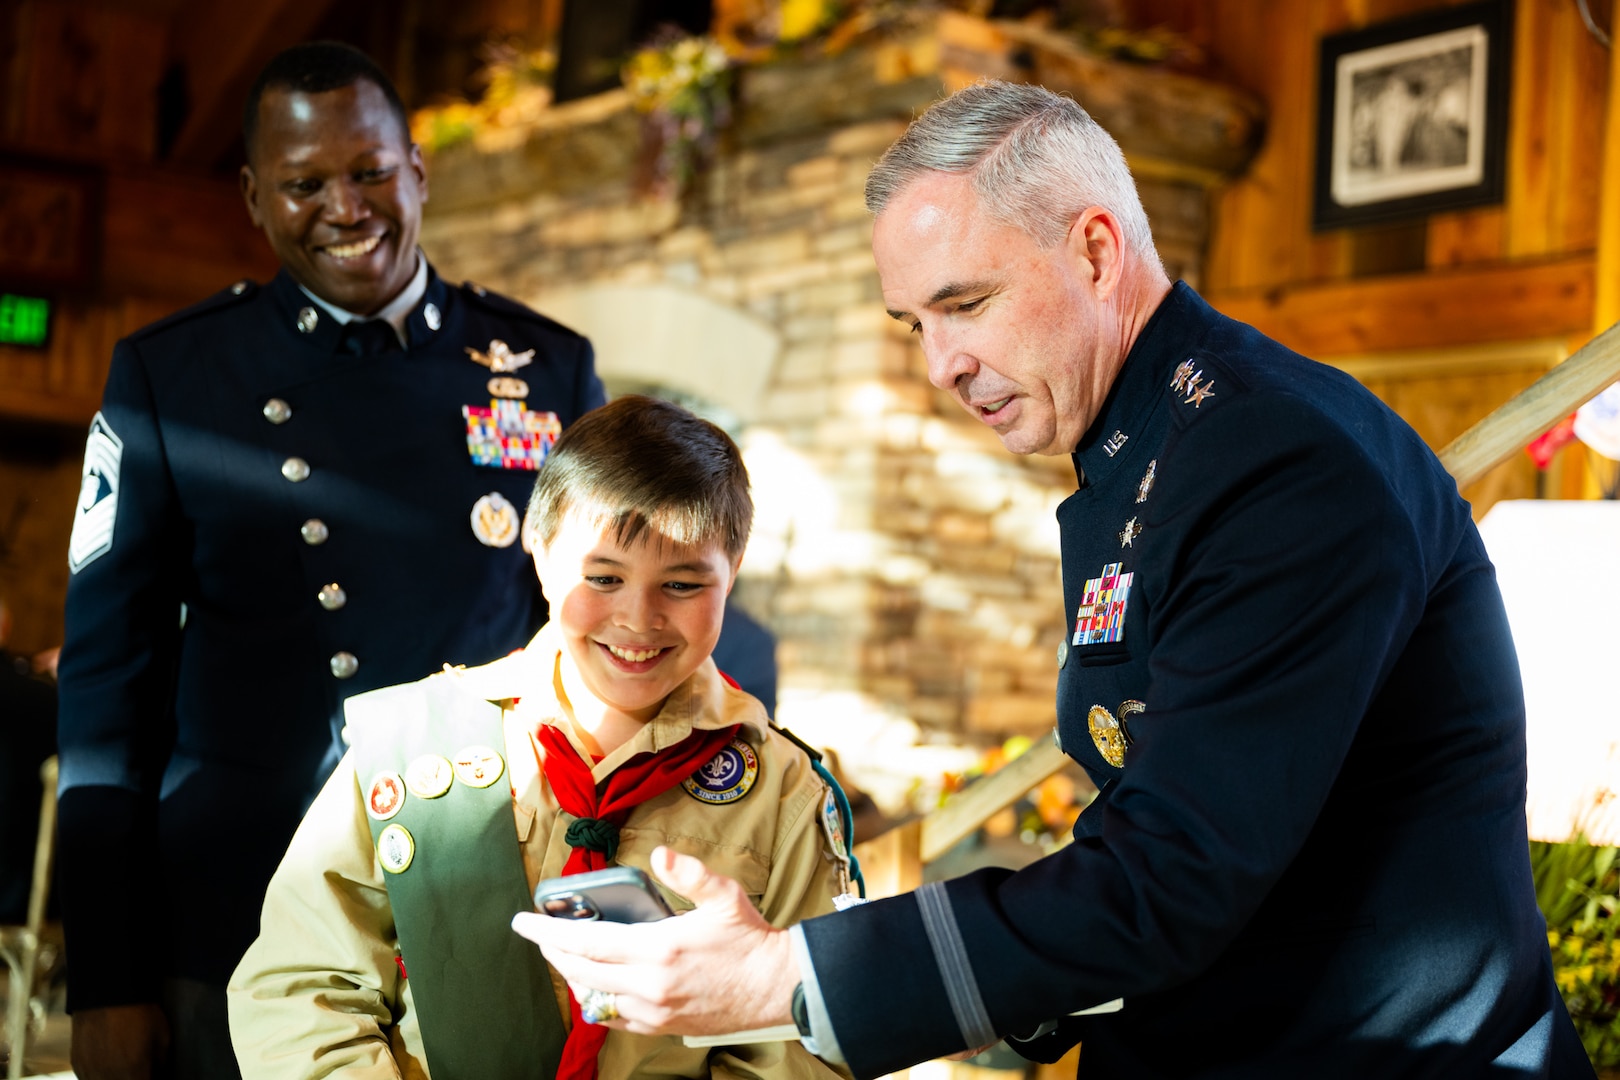 USSPACECOM Commander Honors Colorado Springs Enlistees